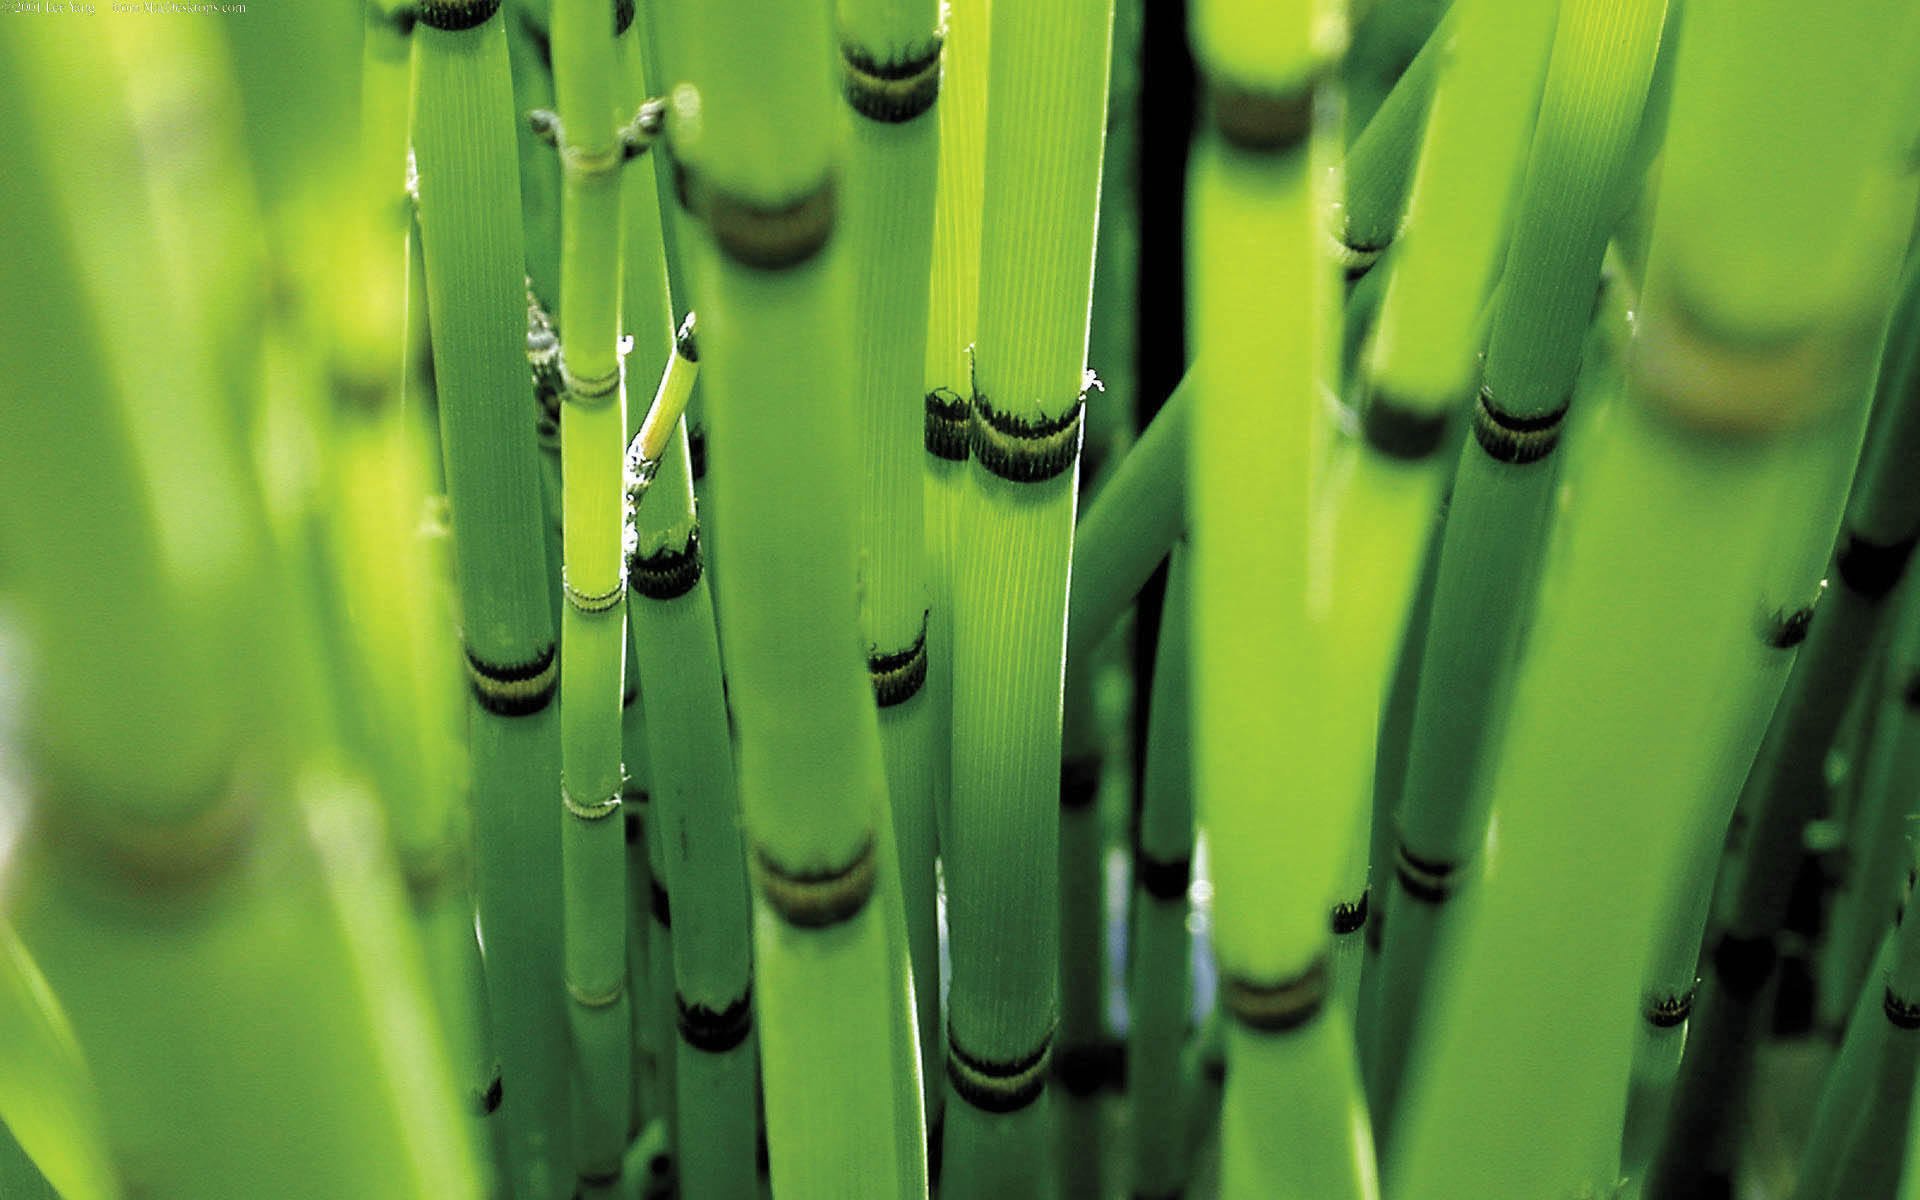 Стебли бамбука, освещённости солнечным светом